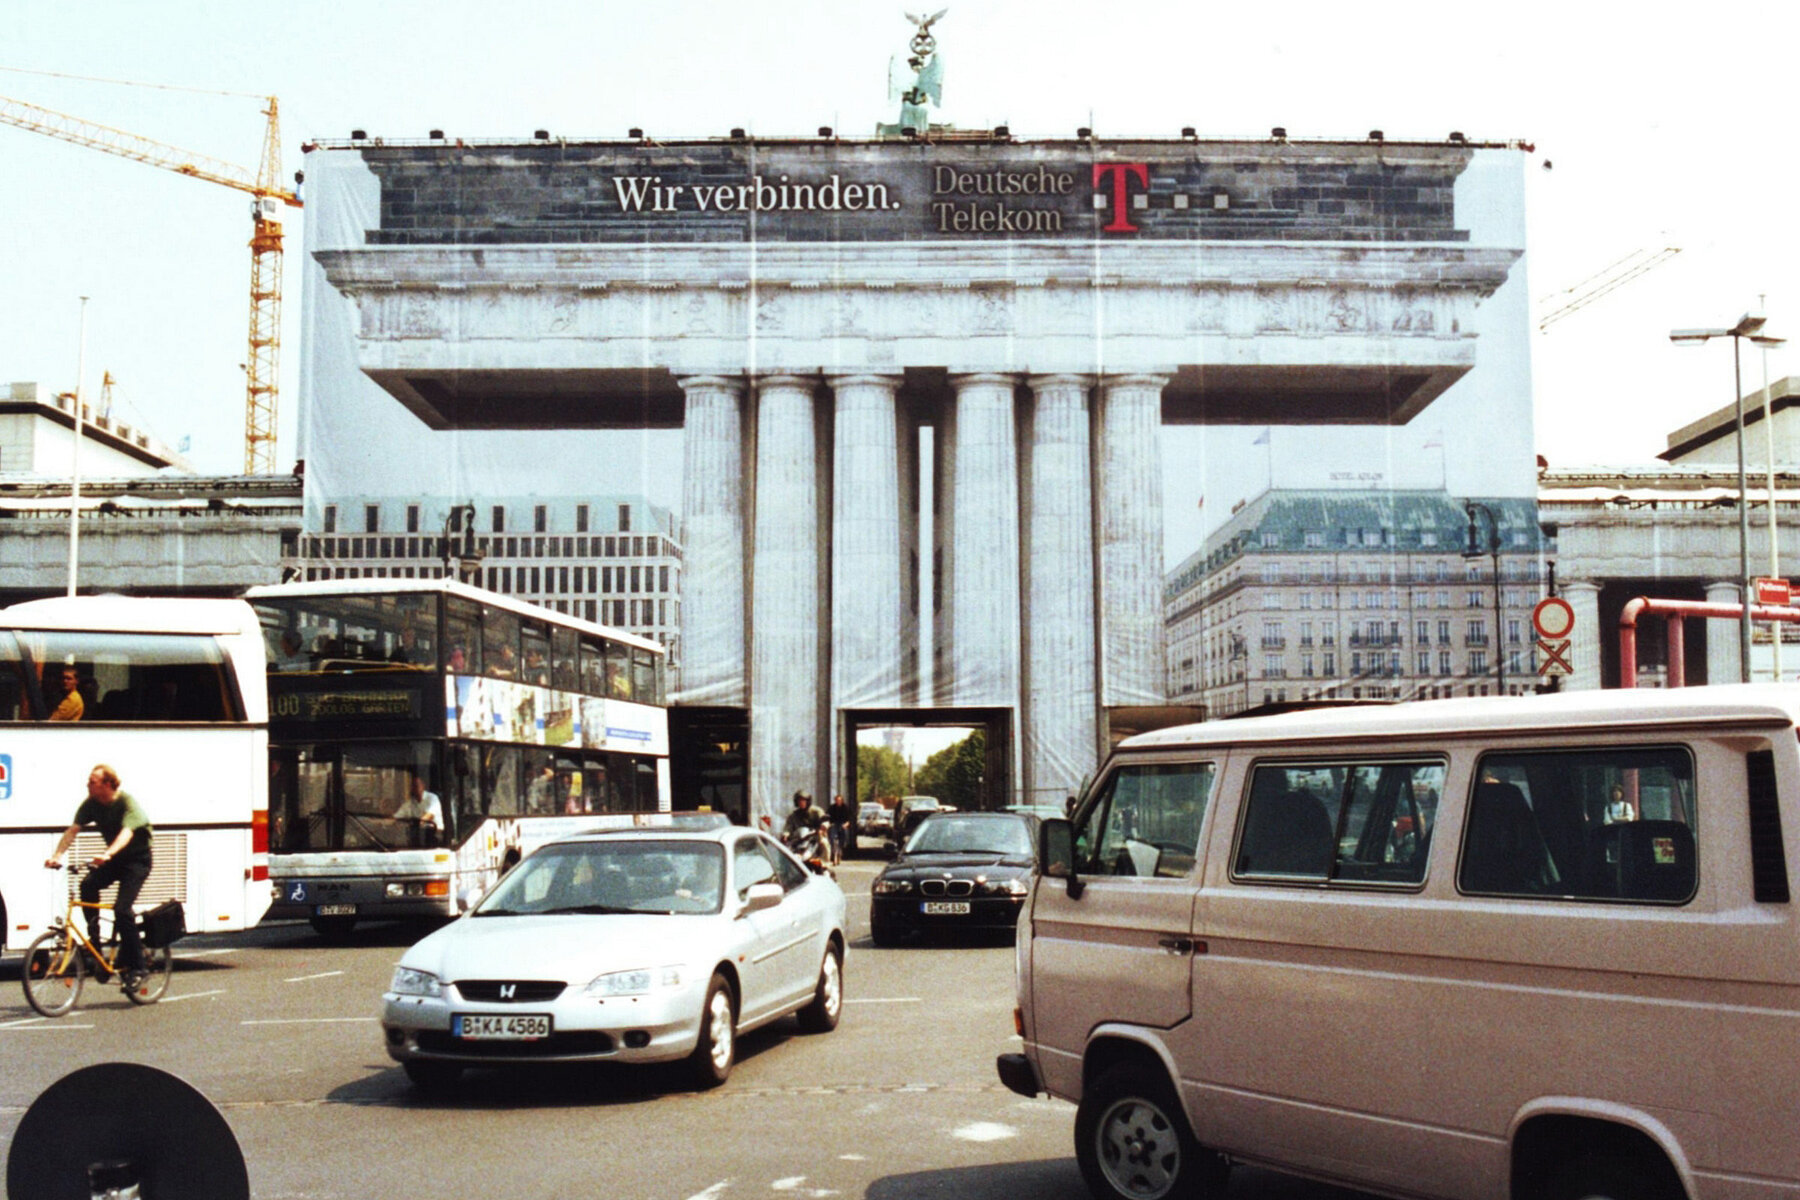 Das Brandenburger Tor ist mit einem Werbebanner der Deutschen Telekom verhüllt. Darauf sind die angrenzenden Gebäude und Teile des Tores abgebildet. Durch die Mitte fahren Autos.